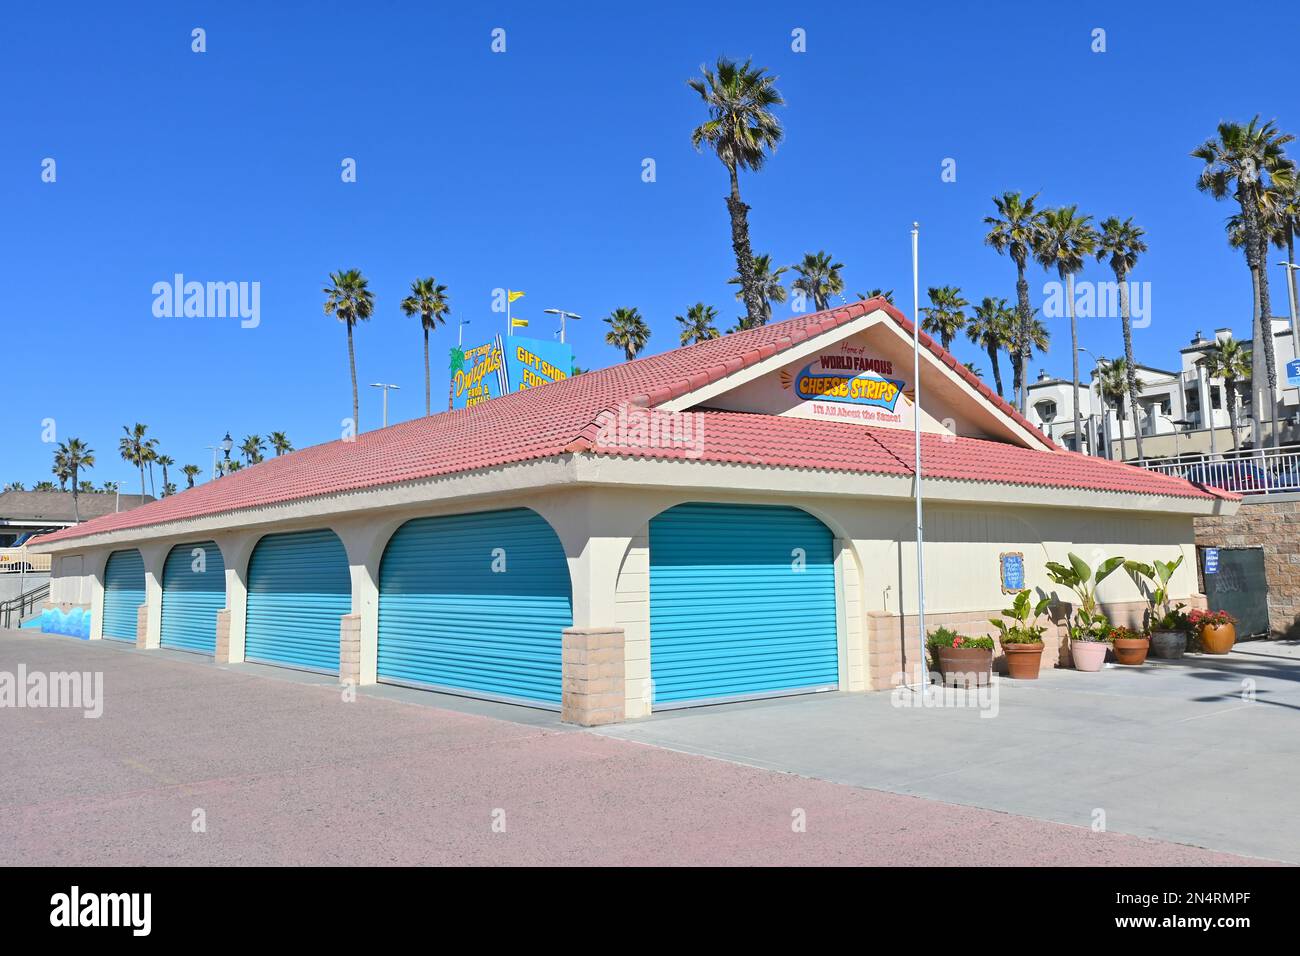 HUNTINGTON BEACH, CALIFORNIA - 7 FEB 2023: Dwights, concessione Stand sul lungomare vicino al molo di Huntington Beach. Foto Stock